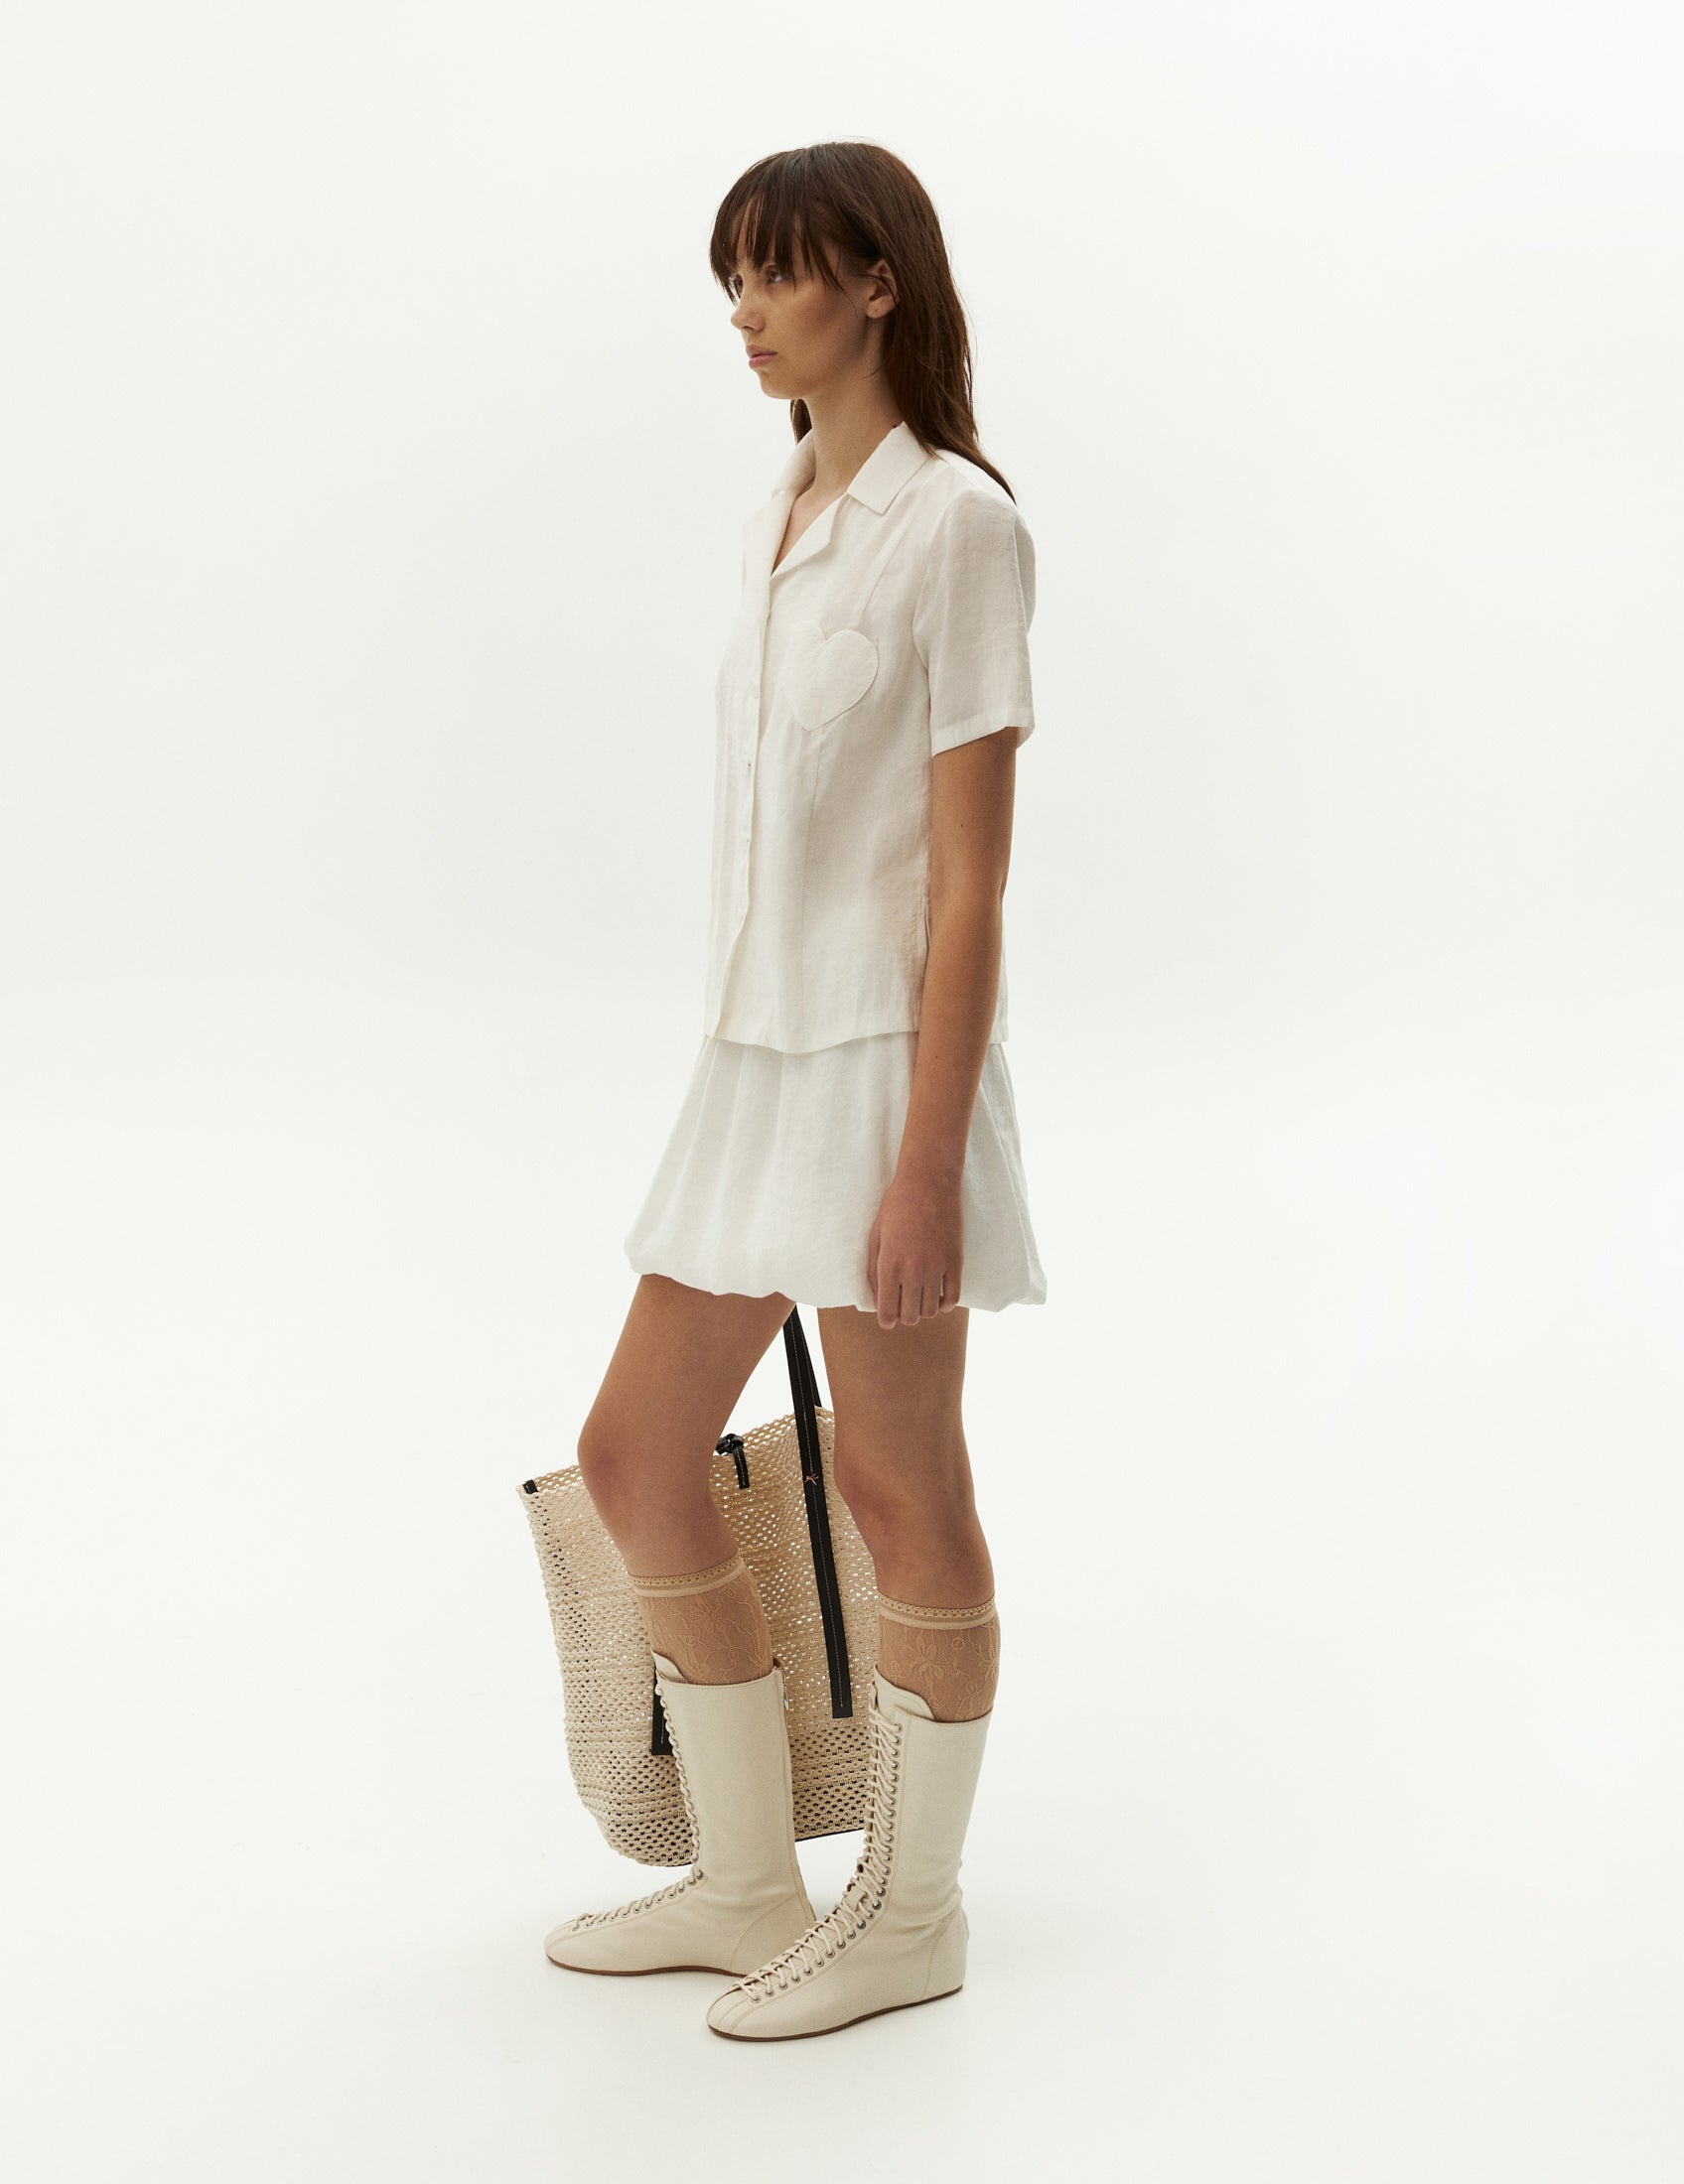 Біла спідниця ballon на резинці від бренду ФОРМА, FORMA одяг онлайн